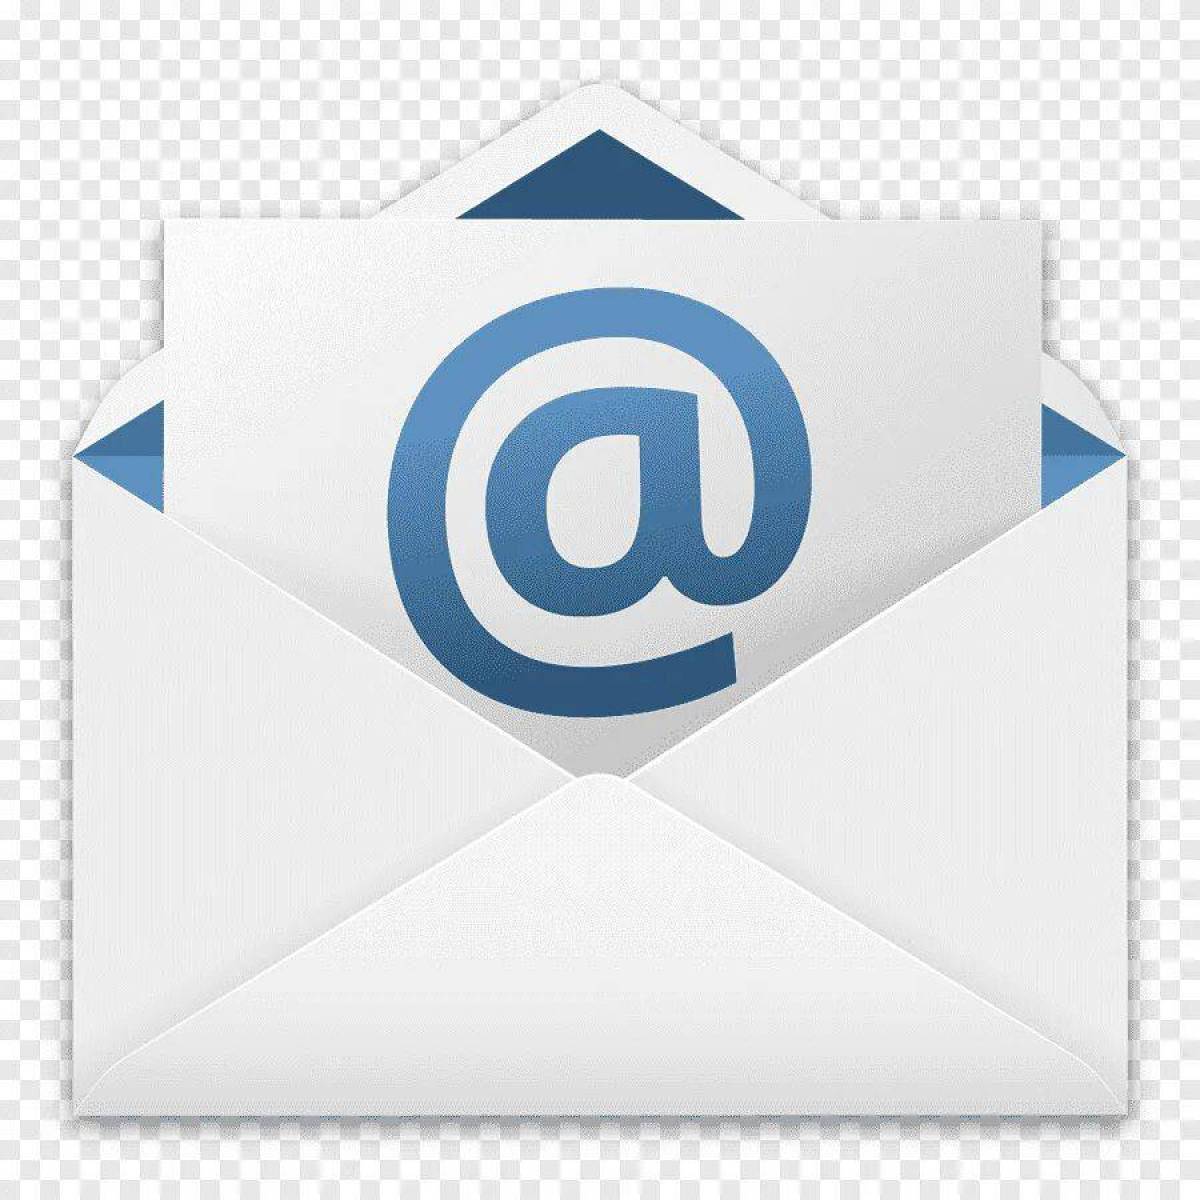 Email 4. Электронная почта. Значок почты майл. Значок электронного письма. Пиктограмма email.